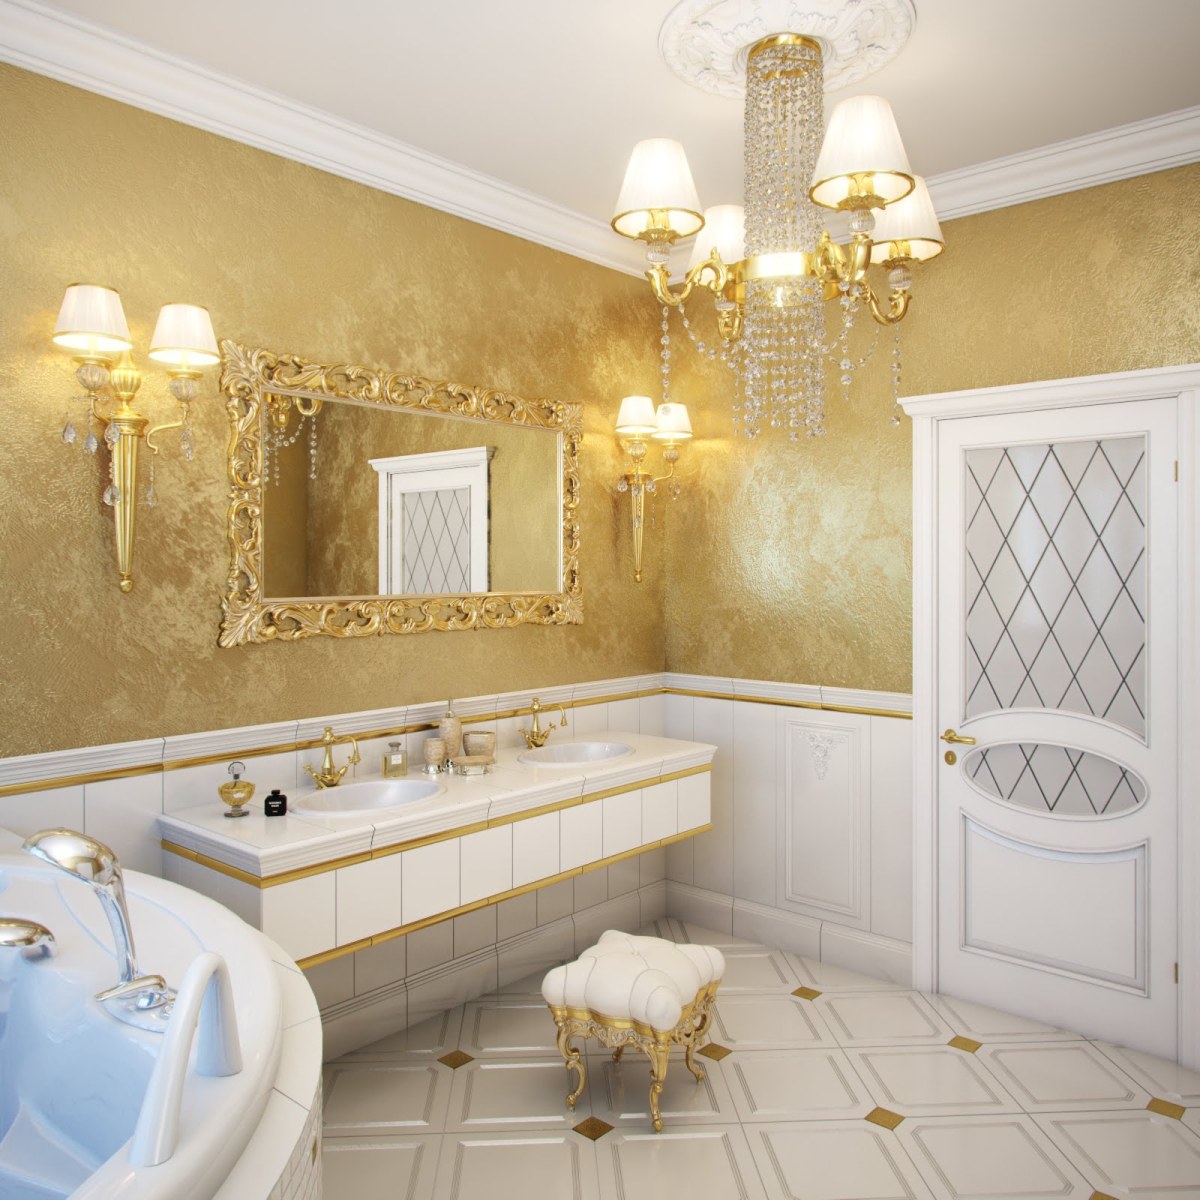 Декоративная штукатурка в ванной комнате своими руками: чем покрыть стены, можно ли делать совмещение с мозаикой, как наносить на бетон и фото видов "короед" и иных